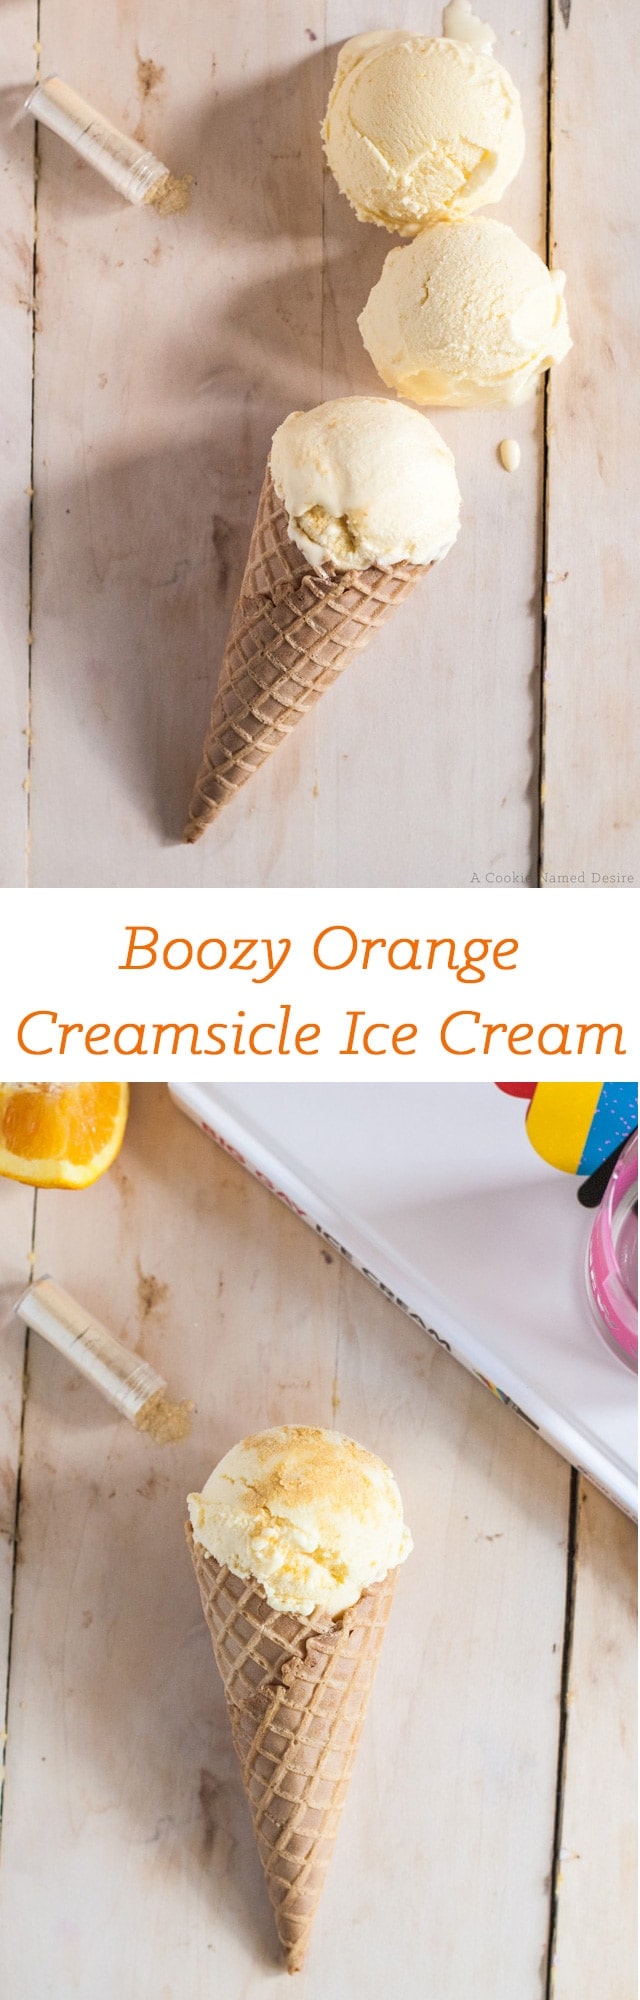 boozy orange creamiscle ice cream